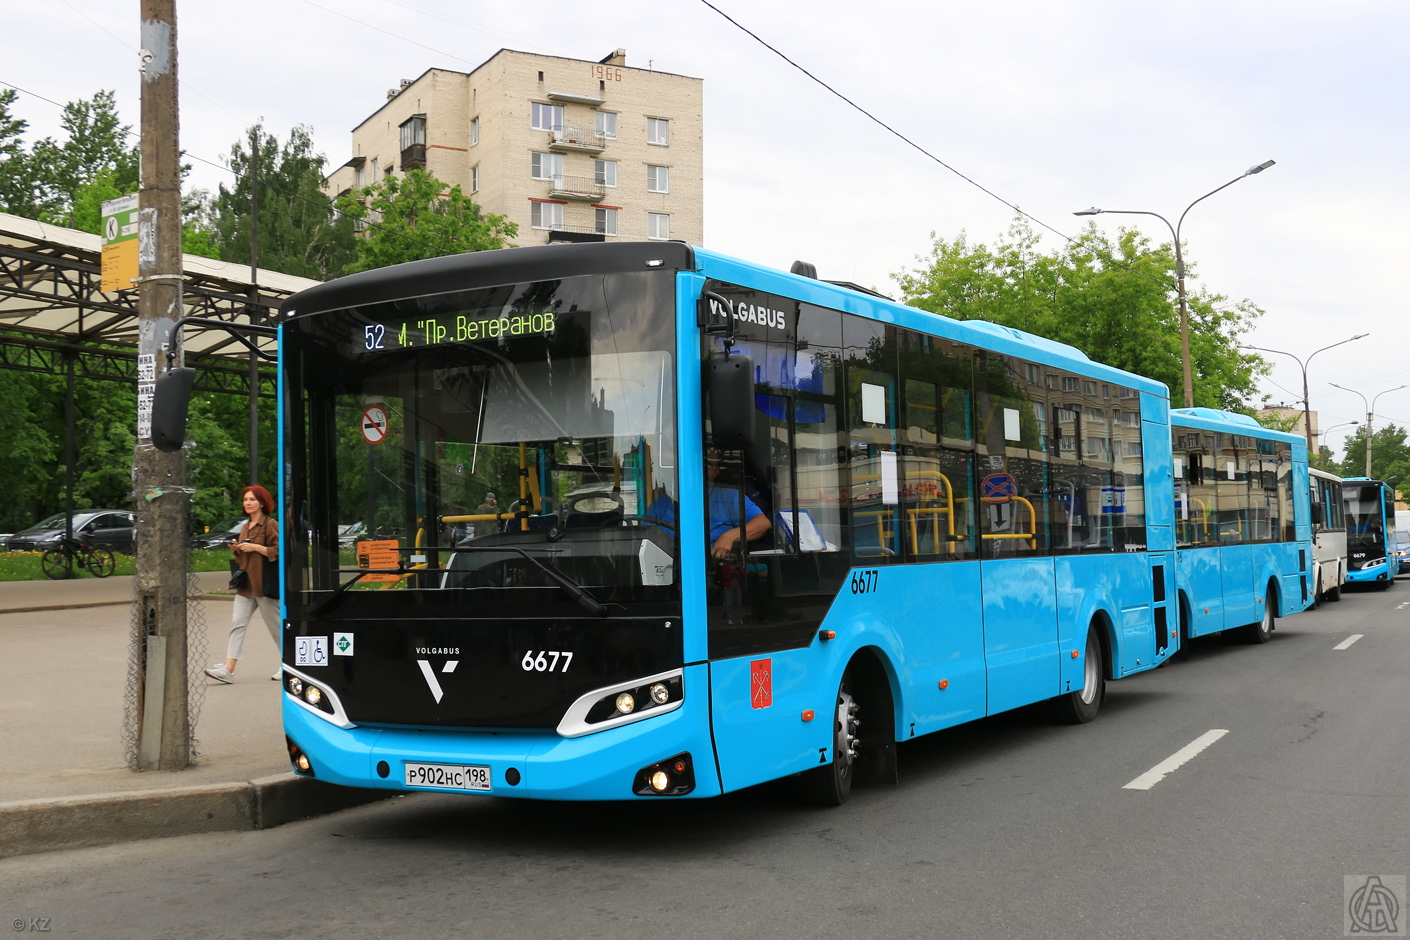 Szentpétervár, Volgabus-4298.G4 (LNG) sz.: 6677